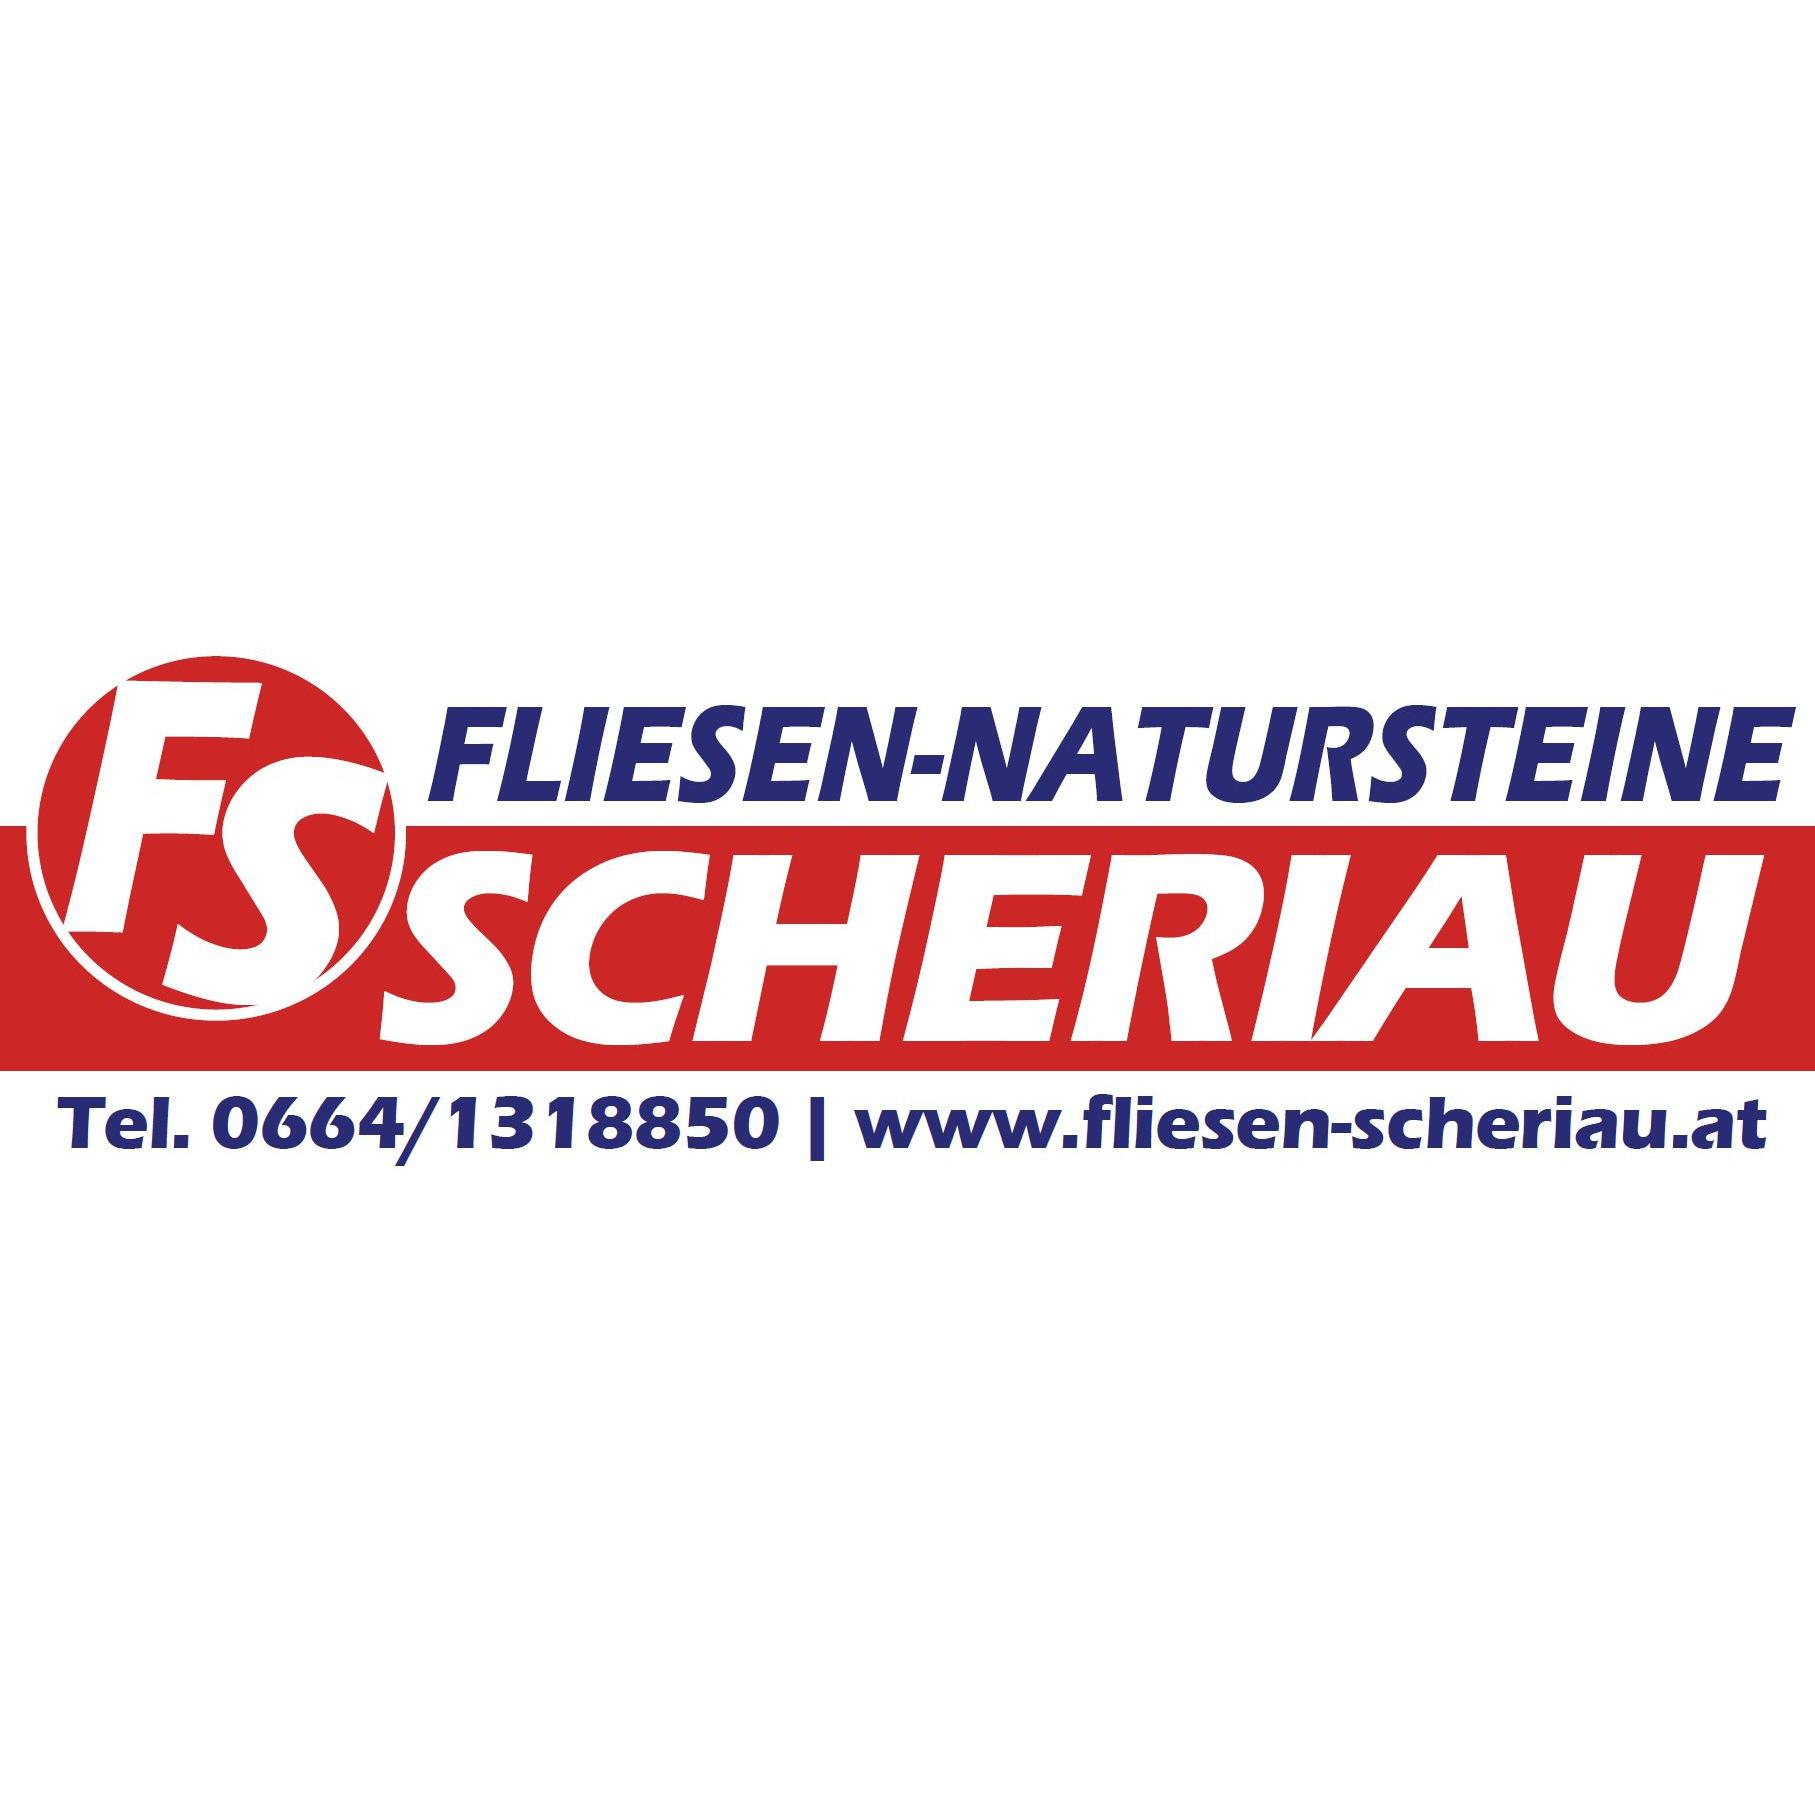 Fliesen Scheriau Logo